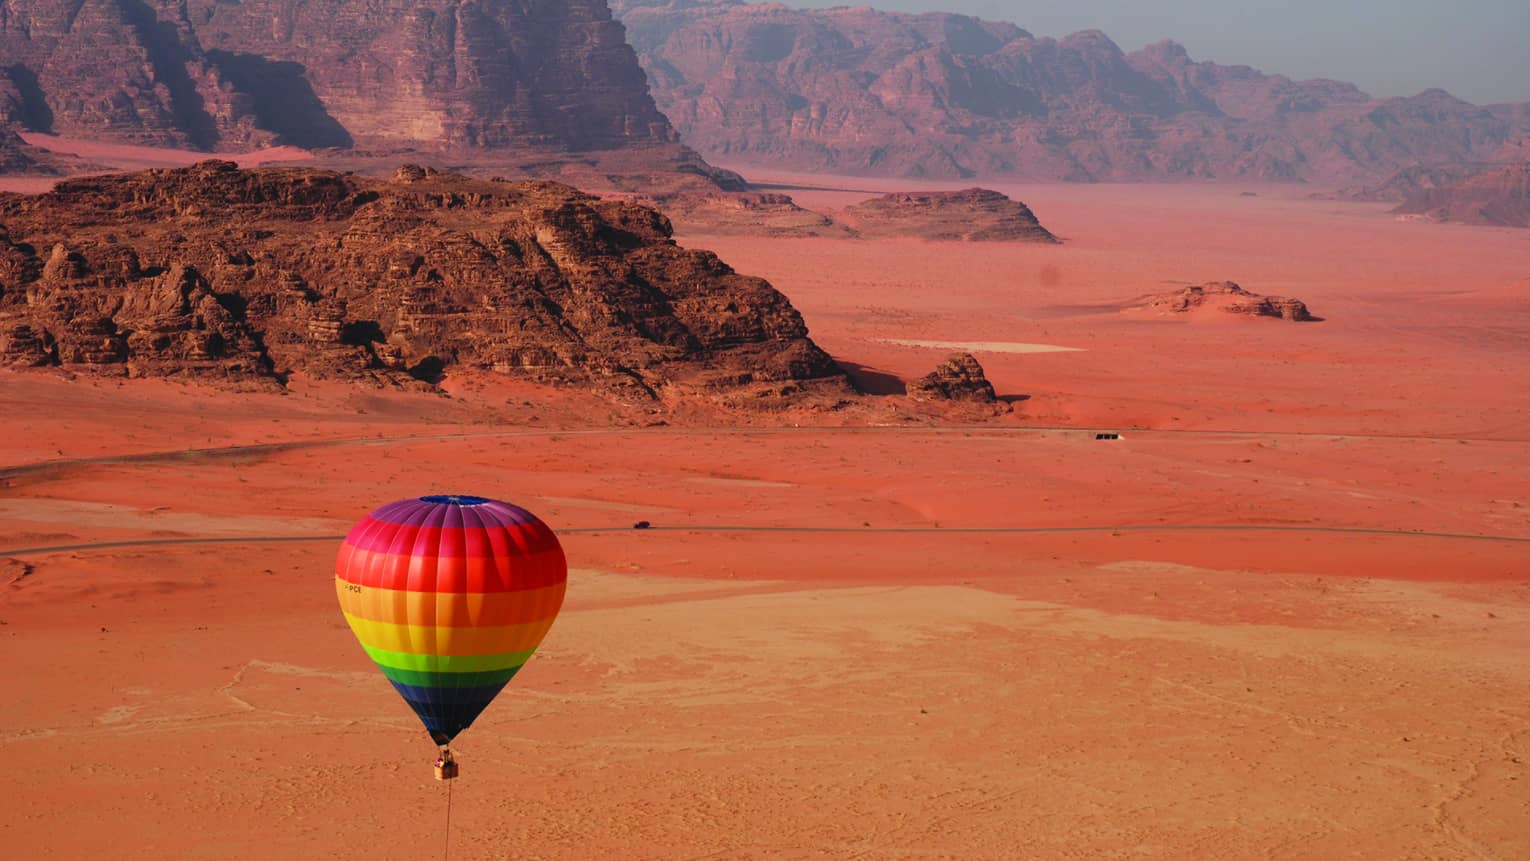 Rainbow hot air balloon flying over red sand in Jordan desert